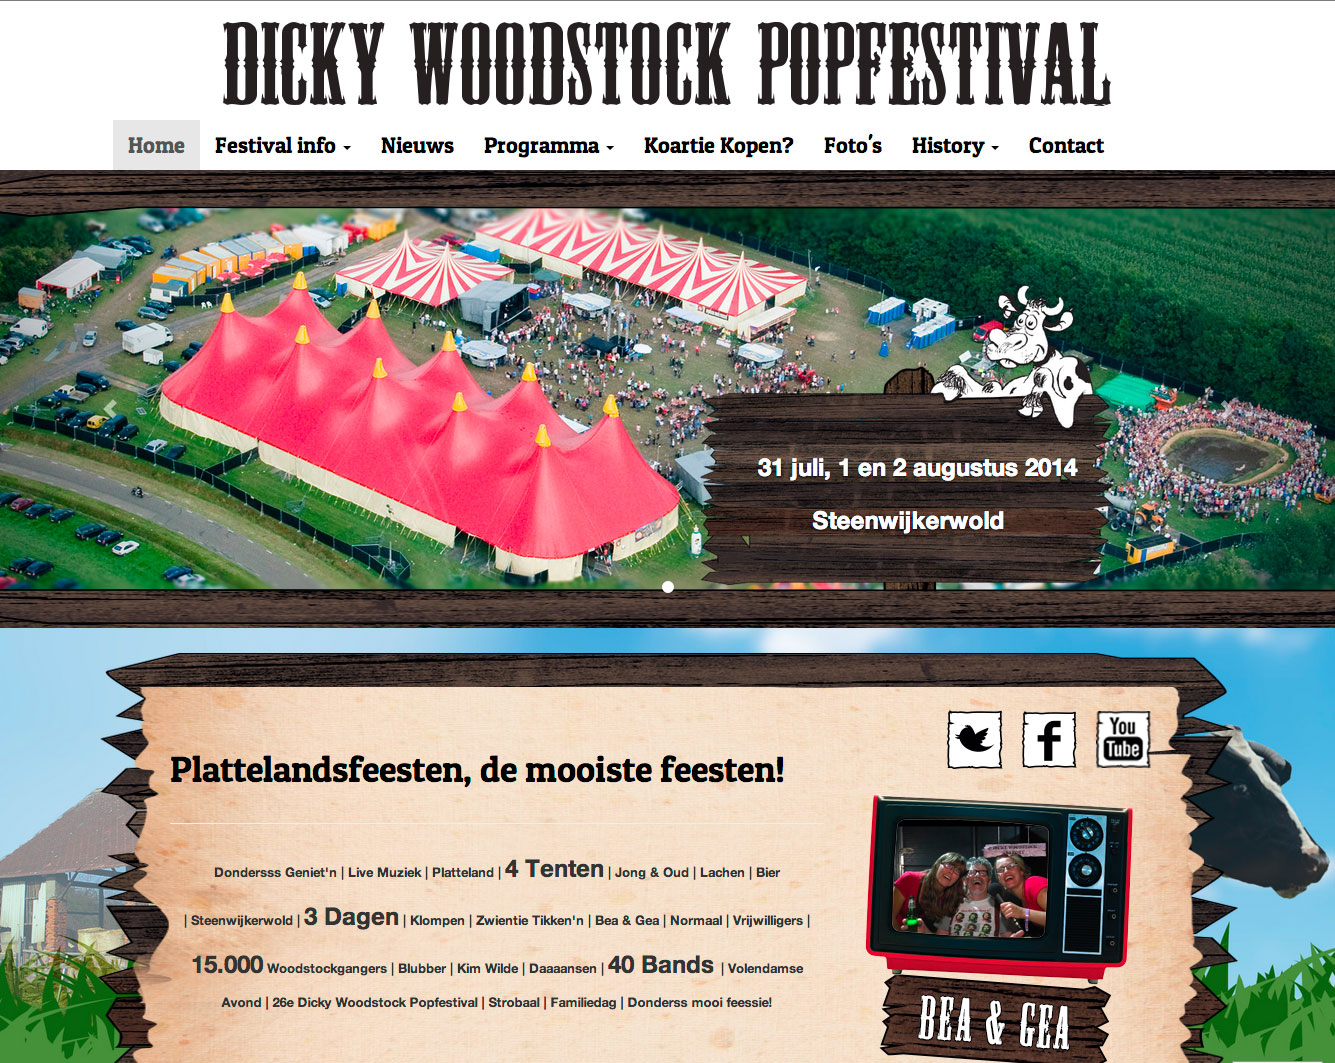 Dickywoodstock Popfestival (djpmedia)